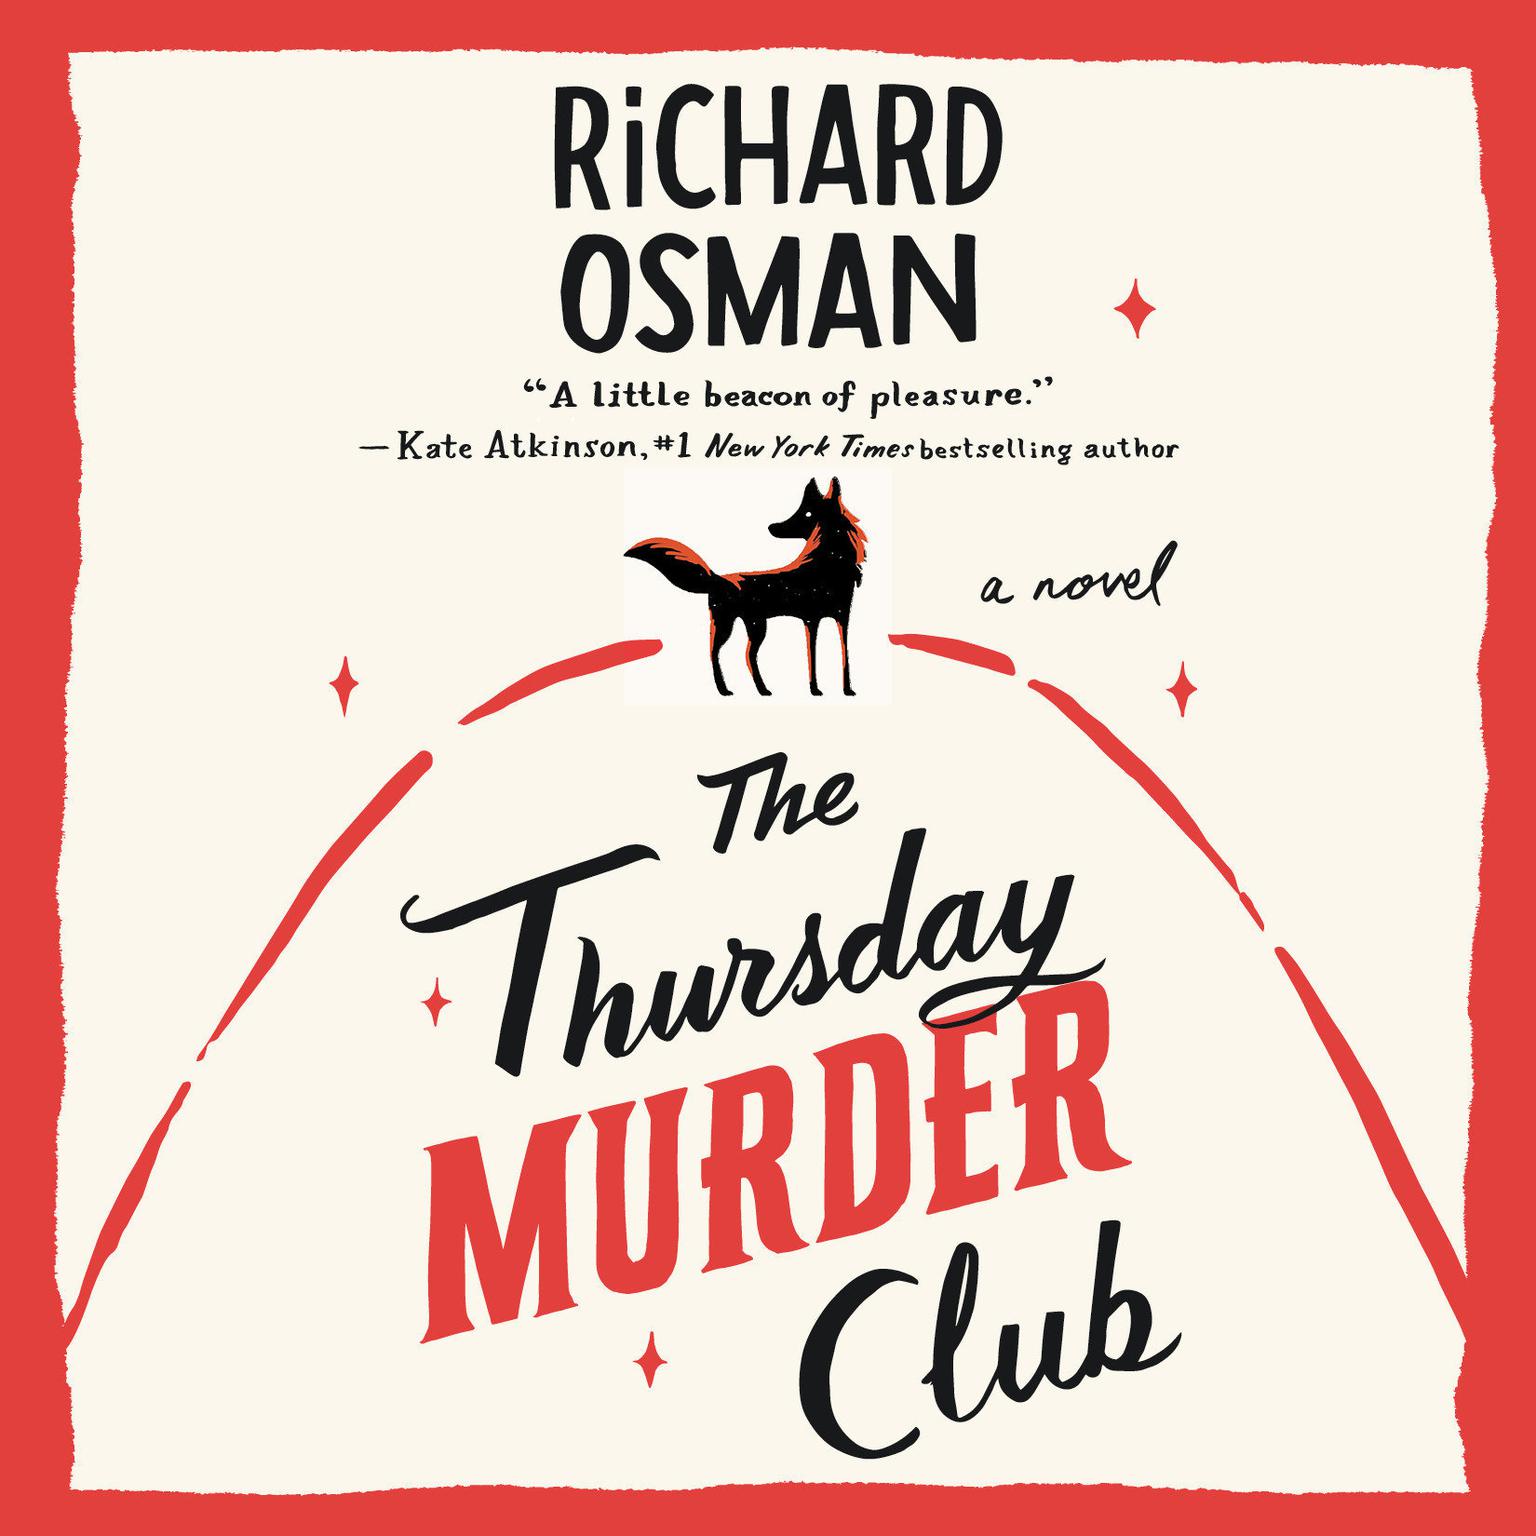 The Thursday Murder Club: A Novel Audiobook, by Richard Osman